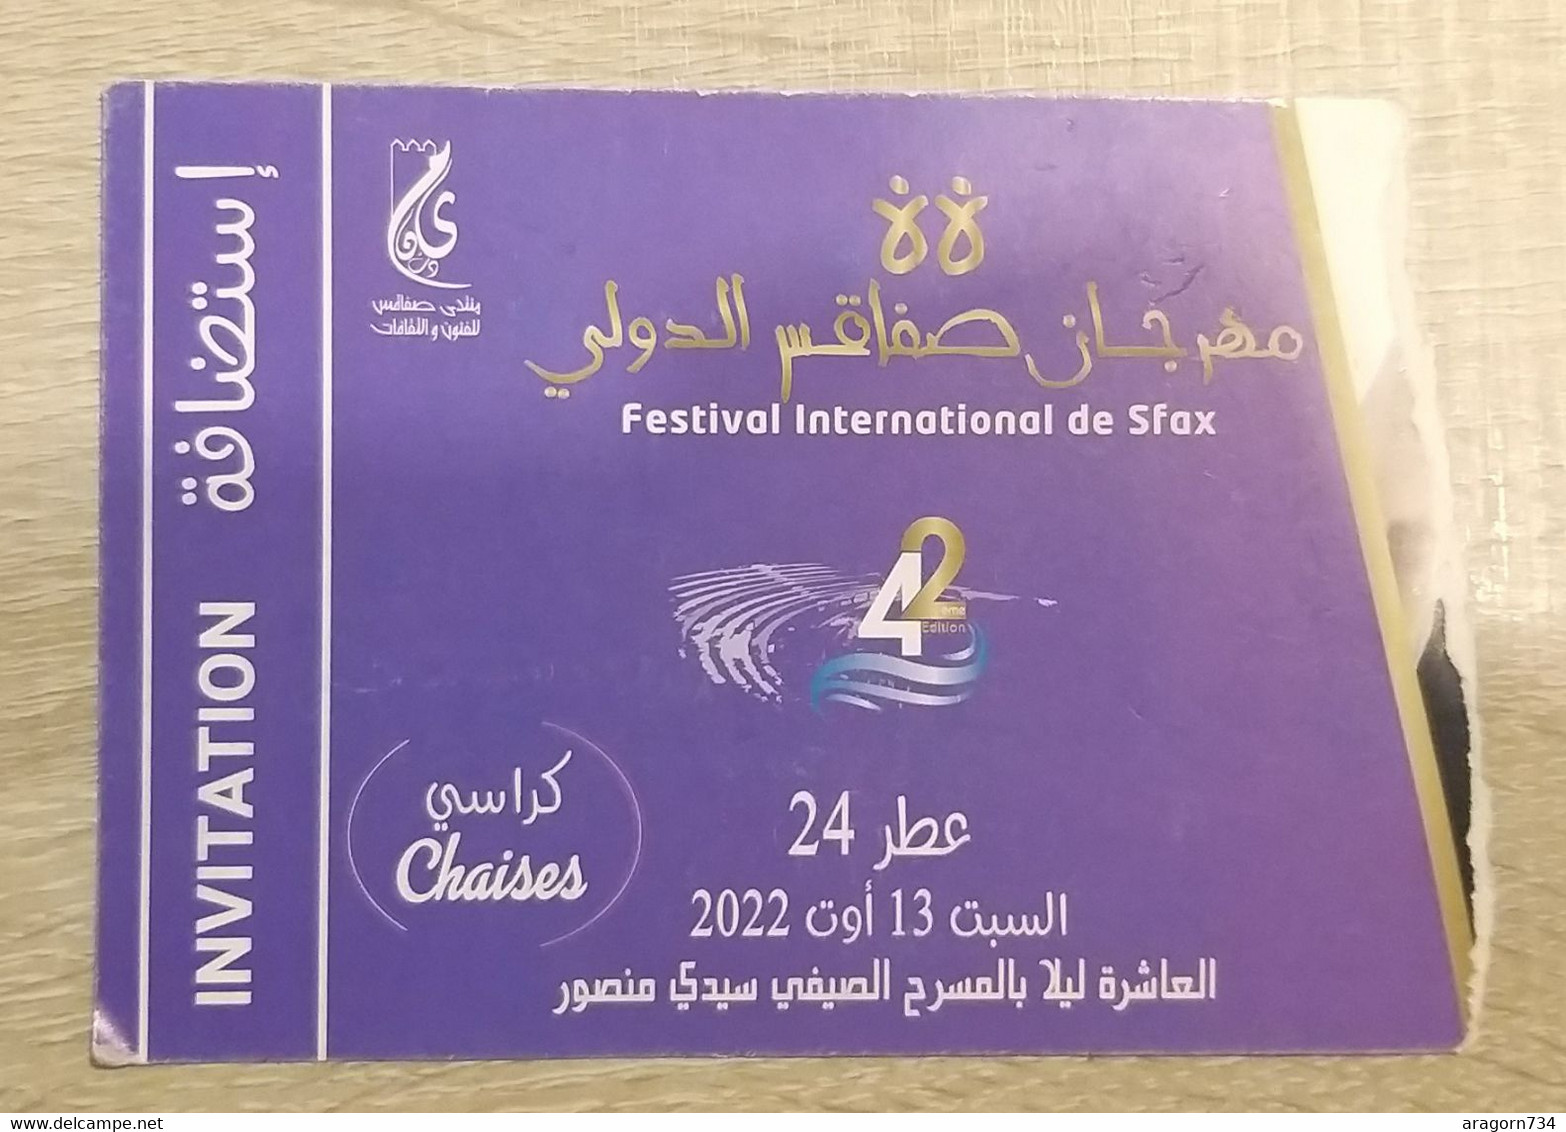 Ticket D'entrée (invitation) Journées Festival De Sfax 2022 - Tunisie - Concert Tickets